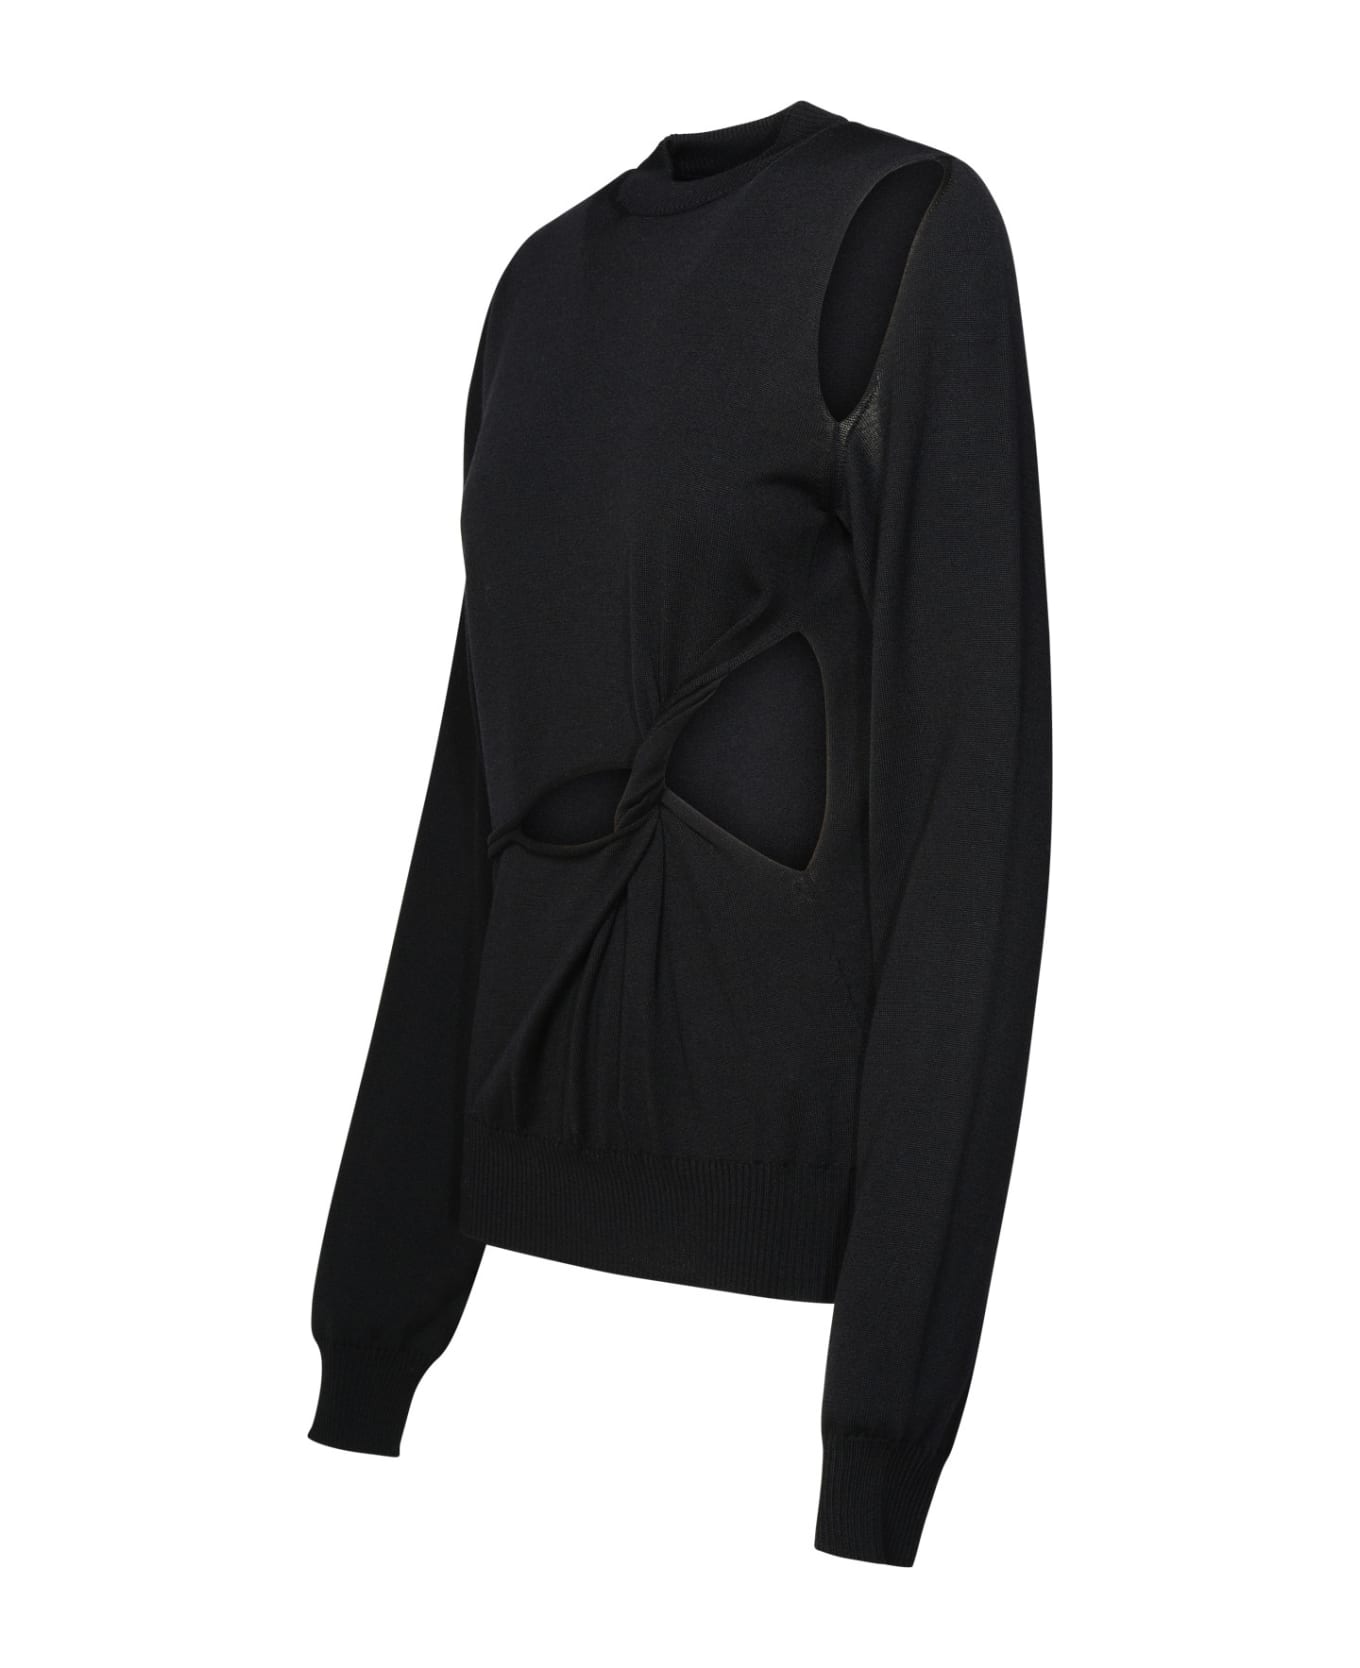 SportMax Black Virgin Wool Sweater - Black ニットウェア